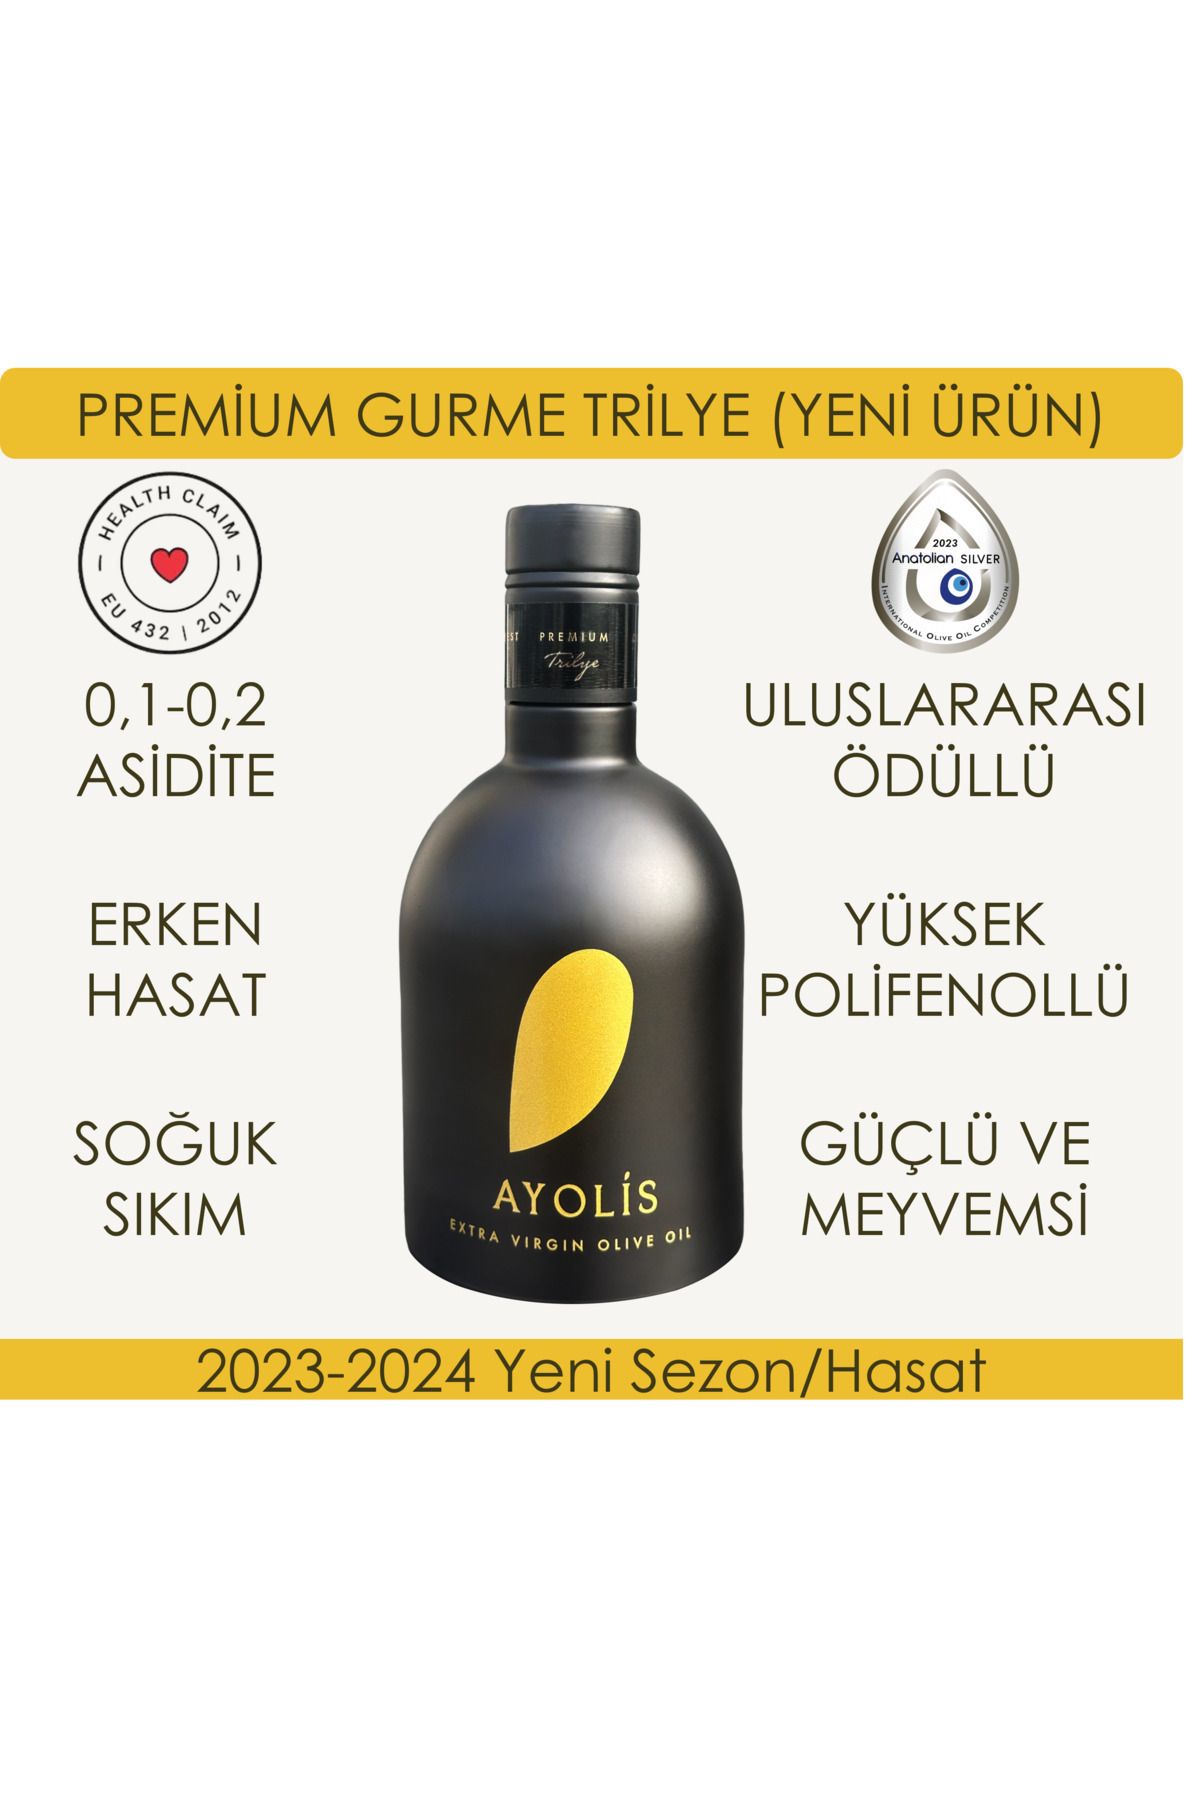 Ayolis Premium Gurme Trilye 500 Ml Yüksek Polifenollü Erken Hasat Soğuk Sıkım Natürel Sızma Zeytinyağı